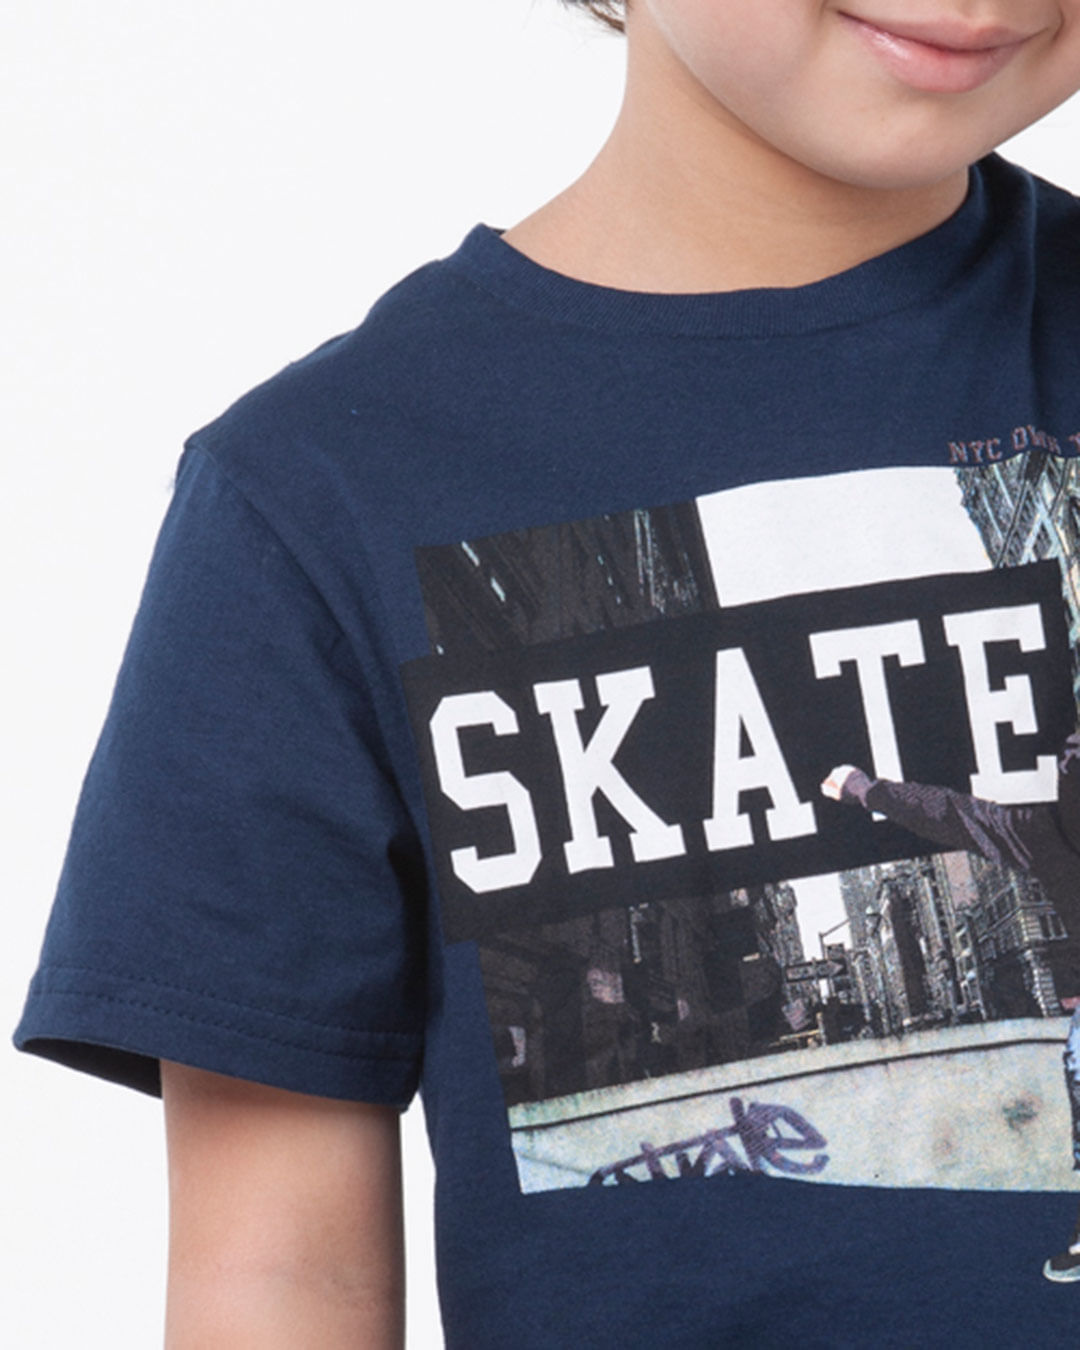 Camiseta-Infantil-Manga-Curta-Skate-Marinho